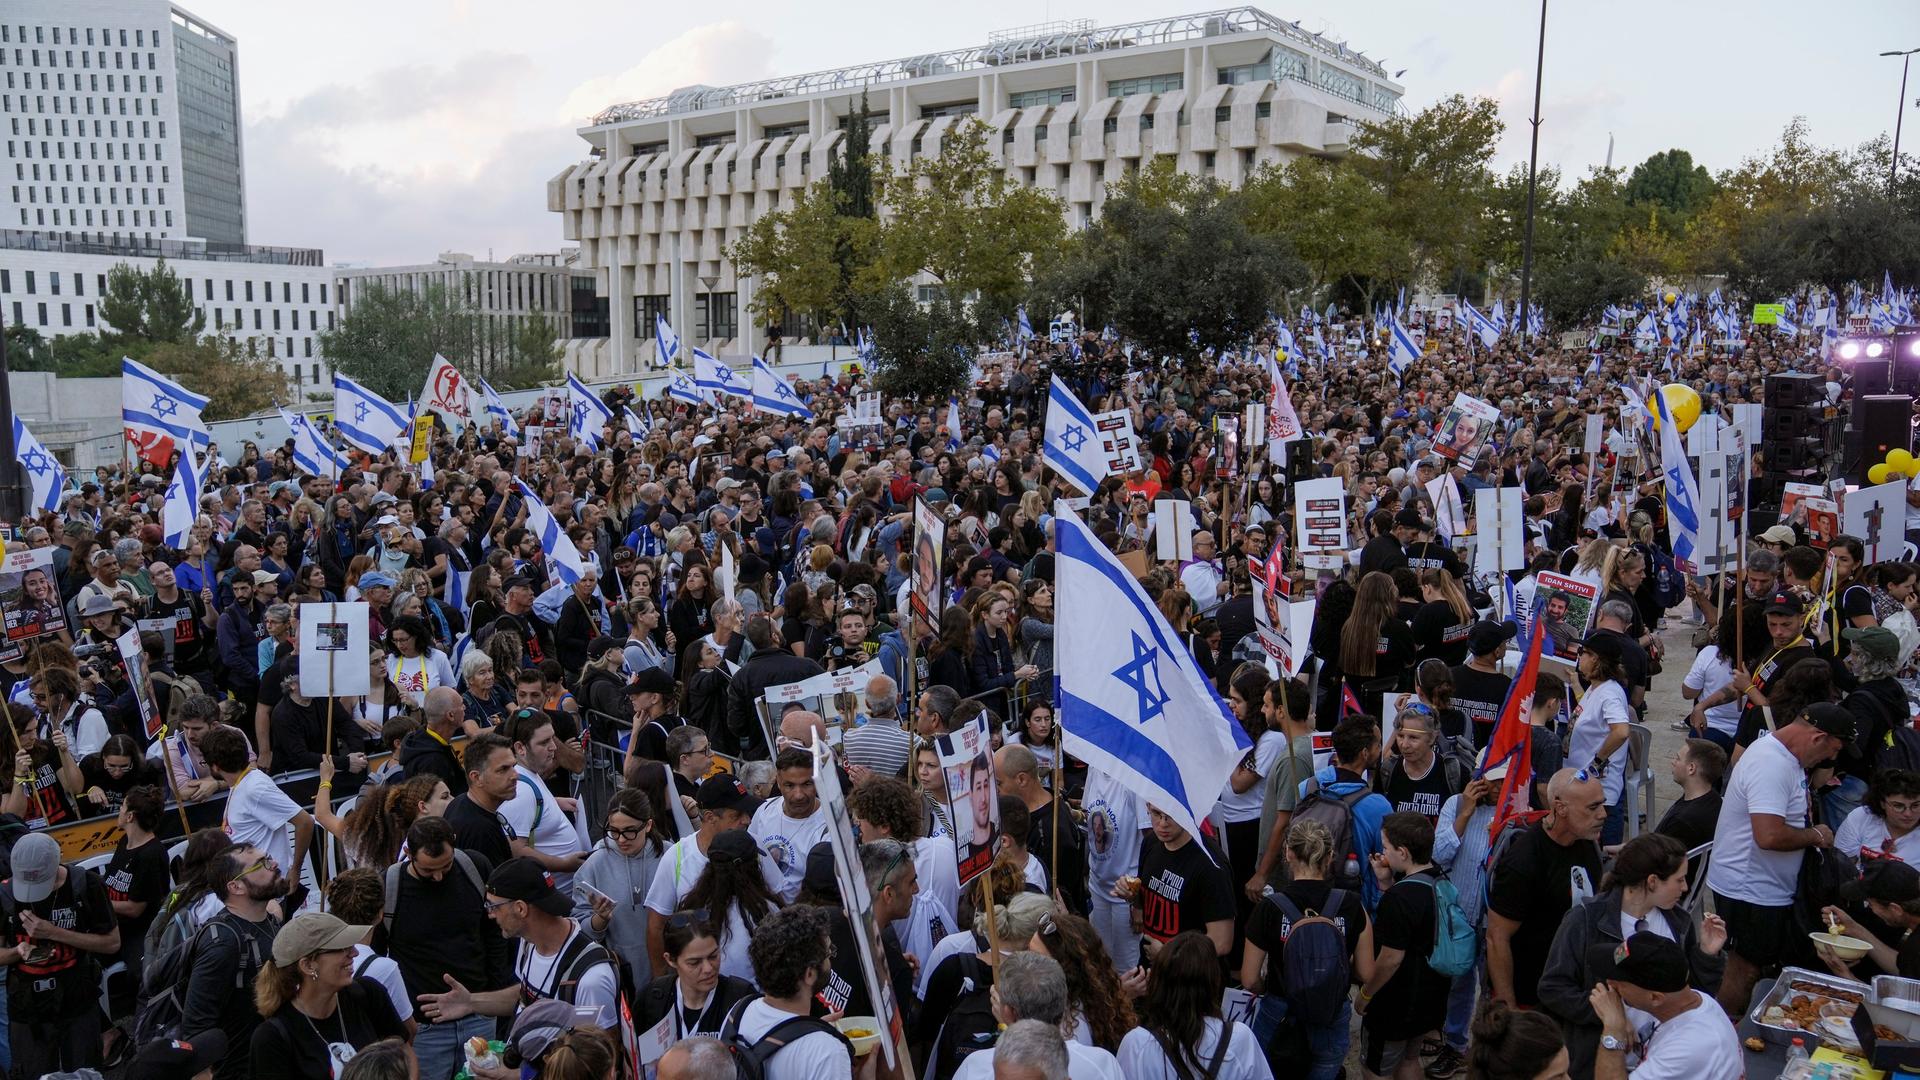 Ein Protestzug mit tausenden Teilnehmern versammelt sich vor einem großen Gebäude, in der Menge werden viele Israel-Flaggen geschwenkt.